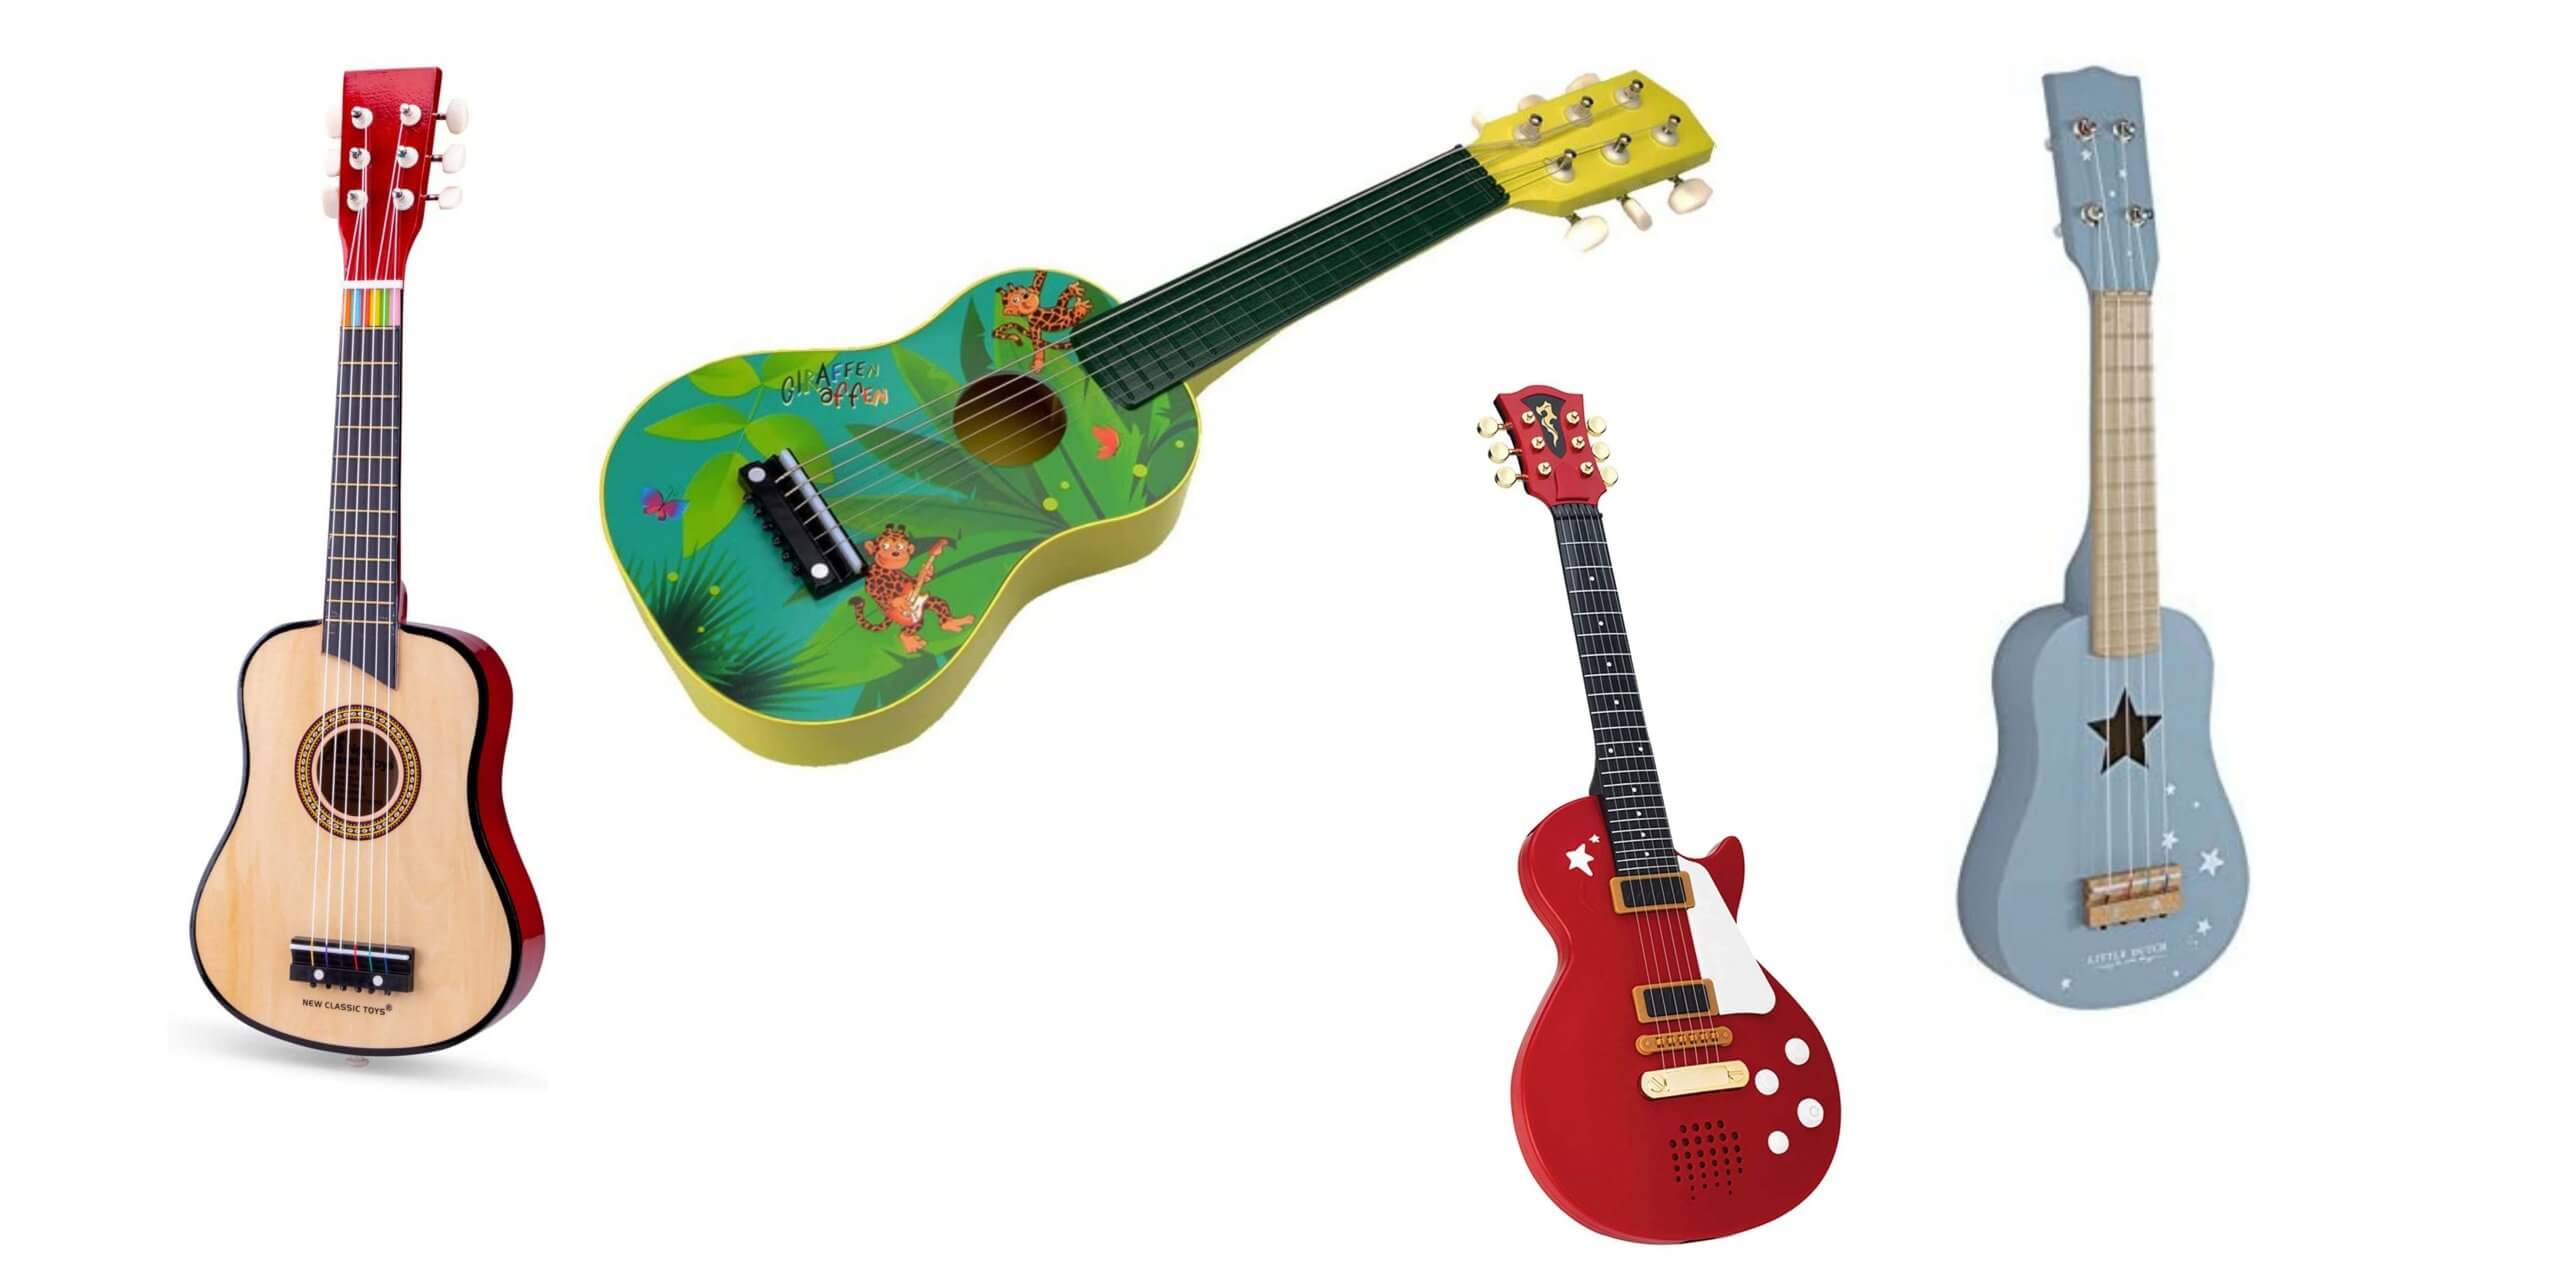 Spieland Kinder Gitarre Holz 6 Saiten Gitarre Spielzeug Musikinstrument Musik Kindergitarre Musikinstrumente Pädagogisches Spielzeug für Kinder ab 3 Jahre